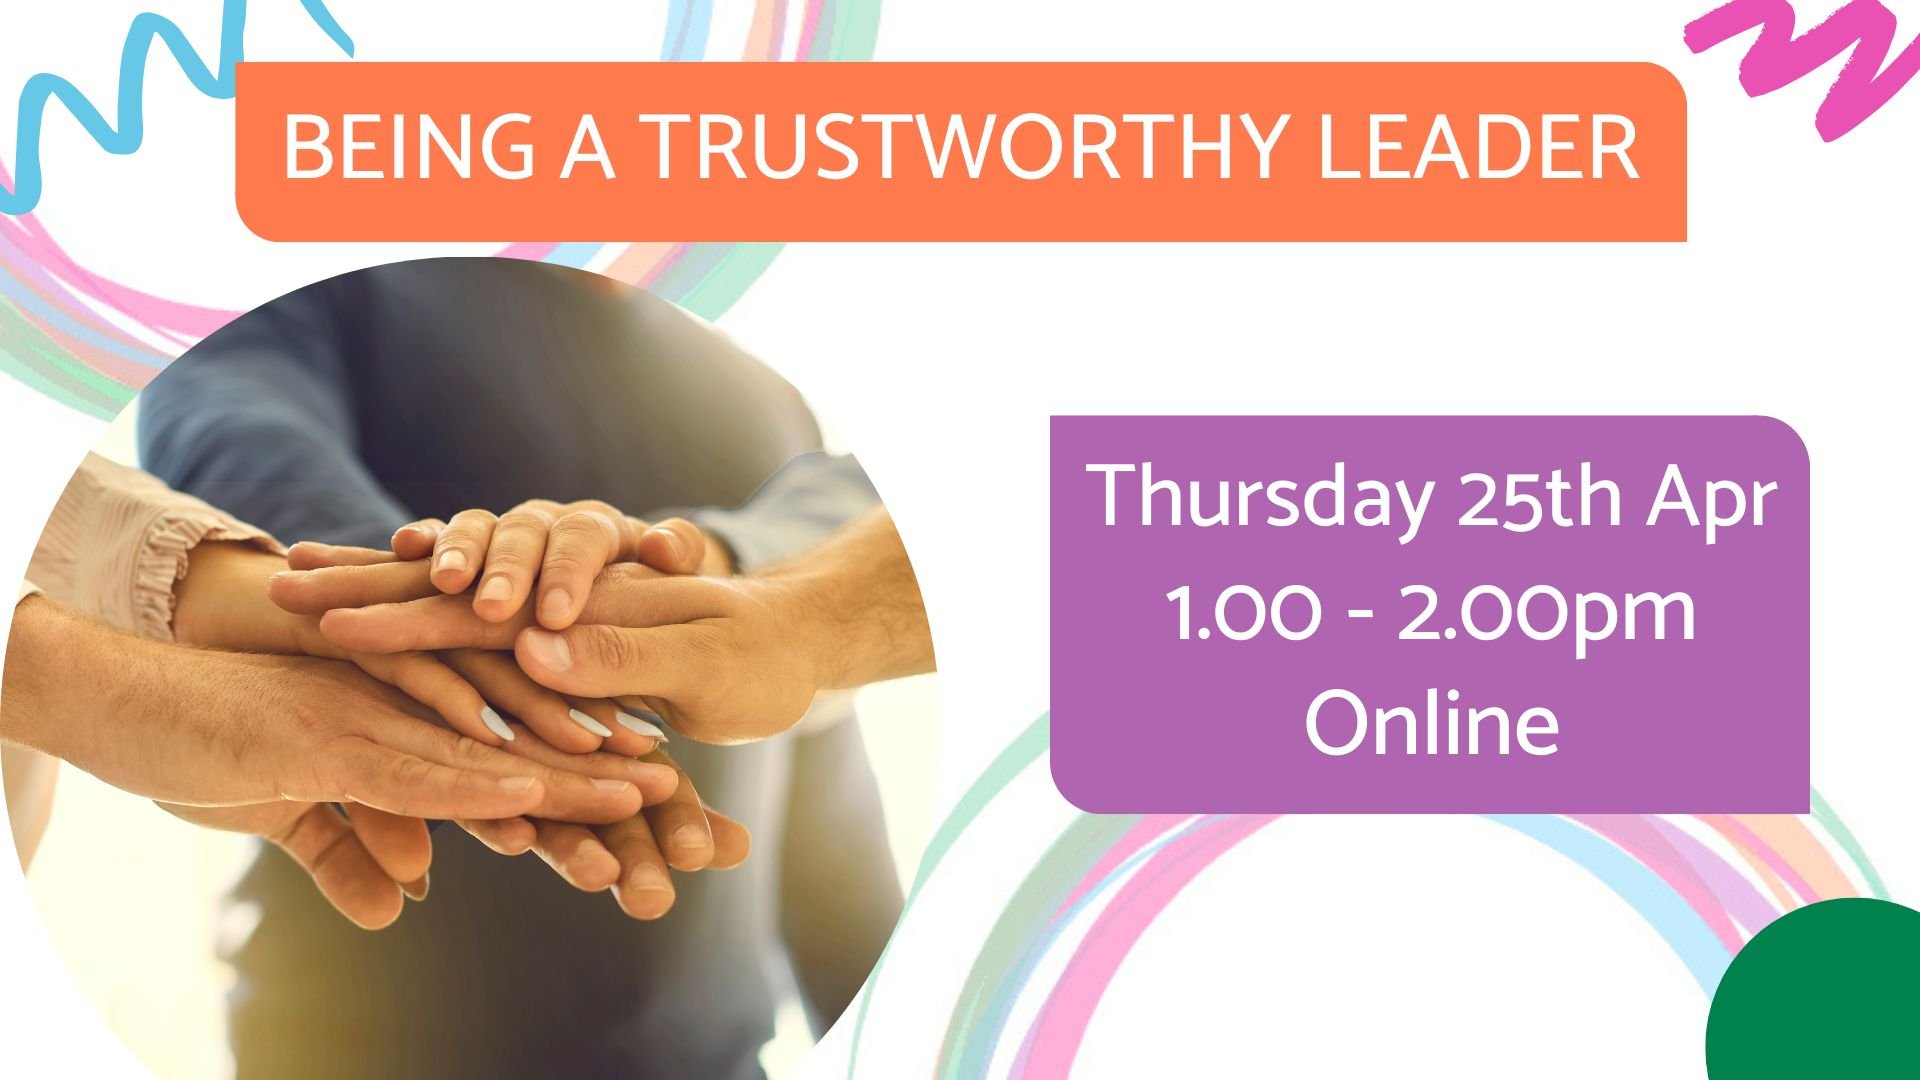 Being a trustworthy leader